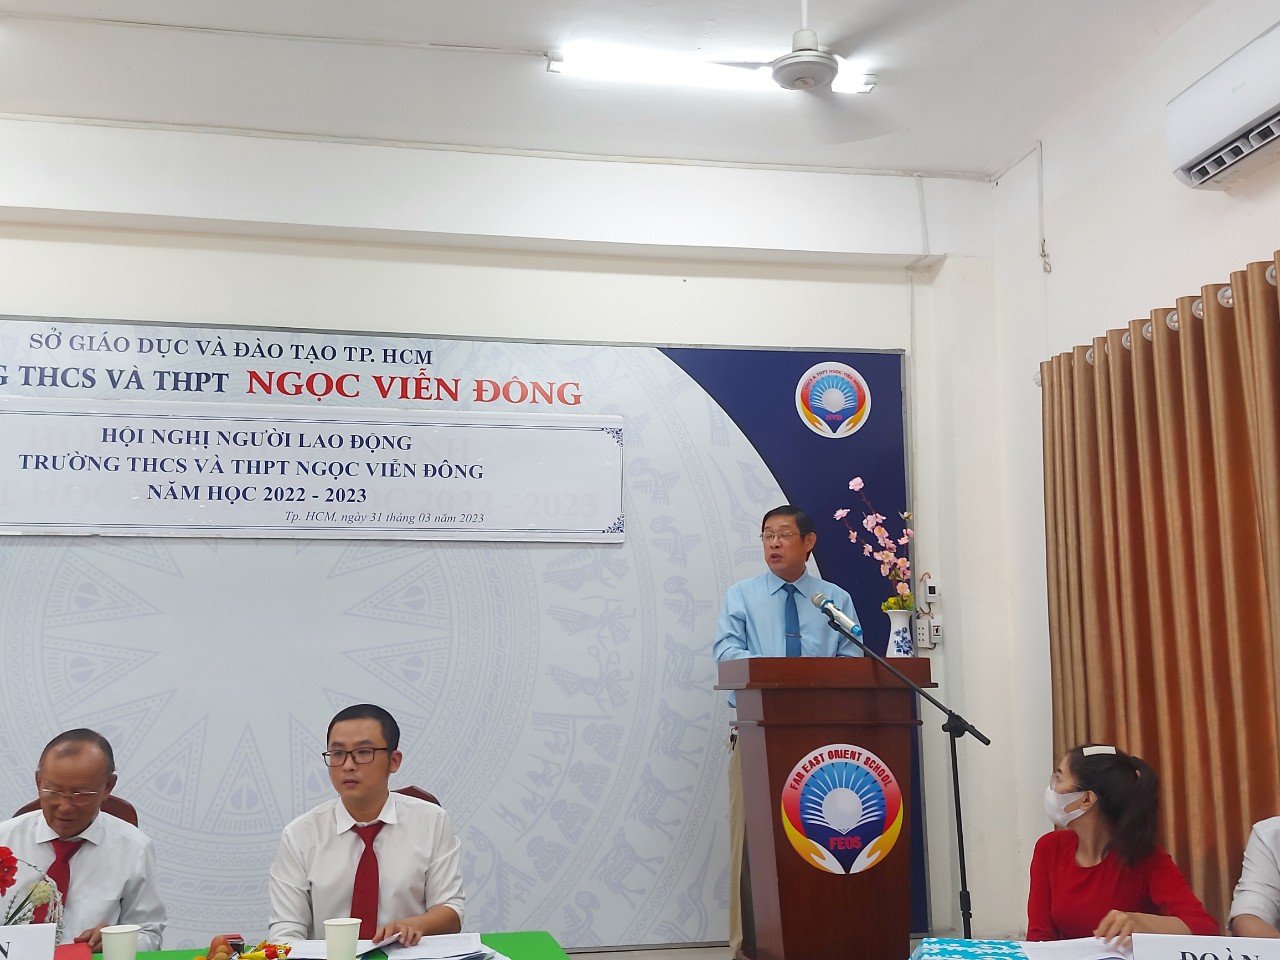 Phát biểu chỉ đạo của đồng chí Phan Anh Minh - Ủy viên BCH Công đoàn Ngành Giáo dục